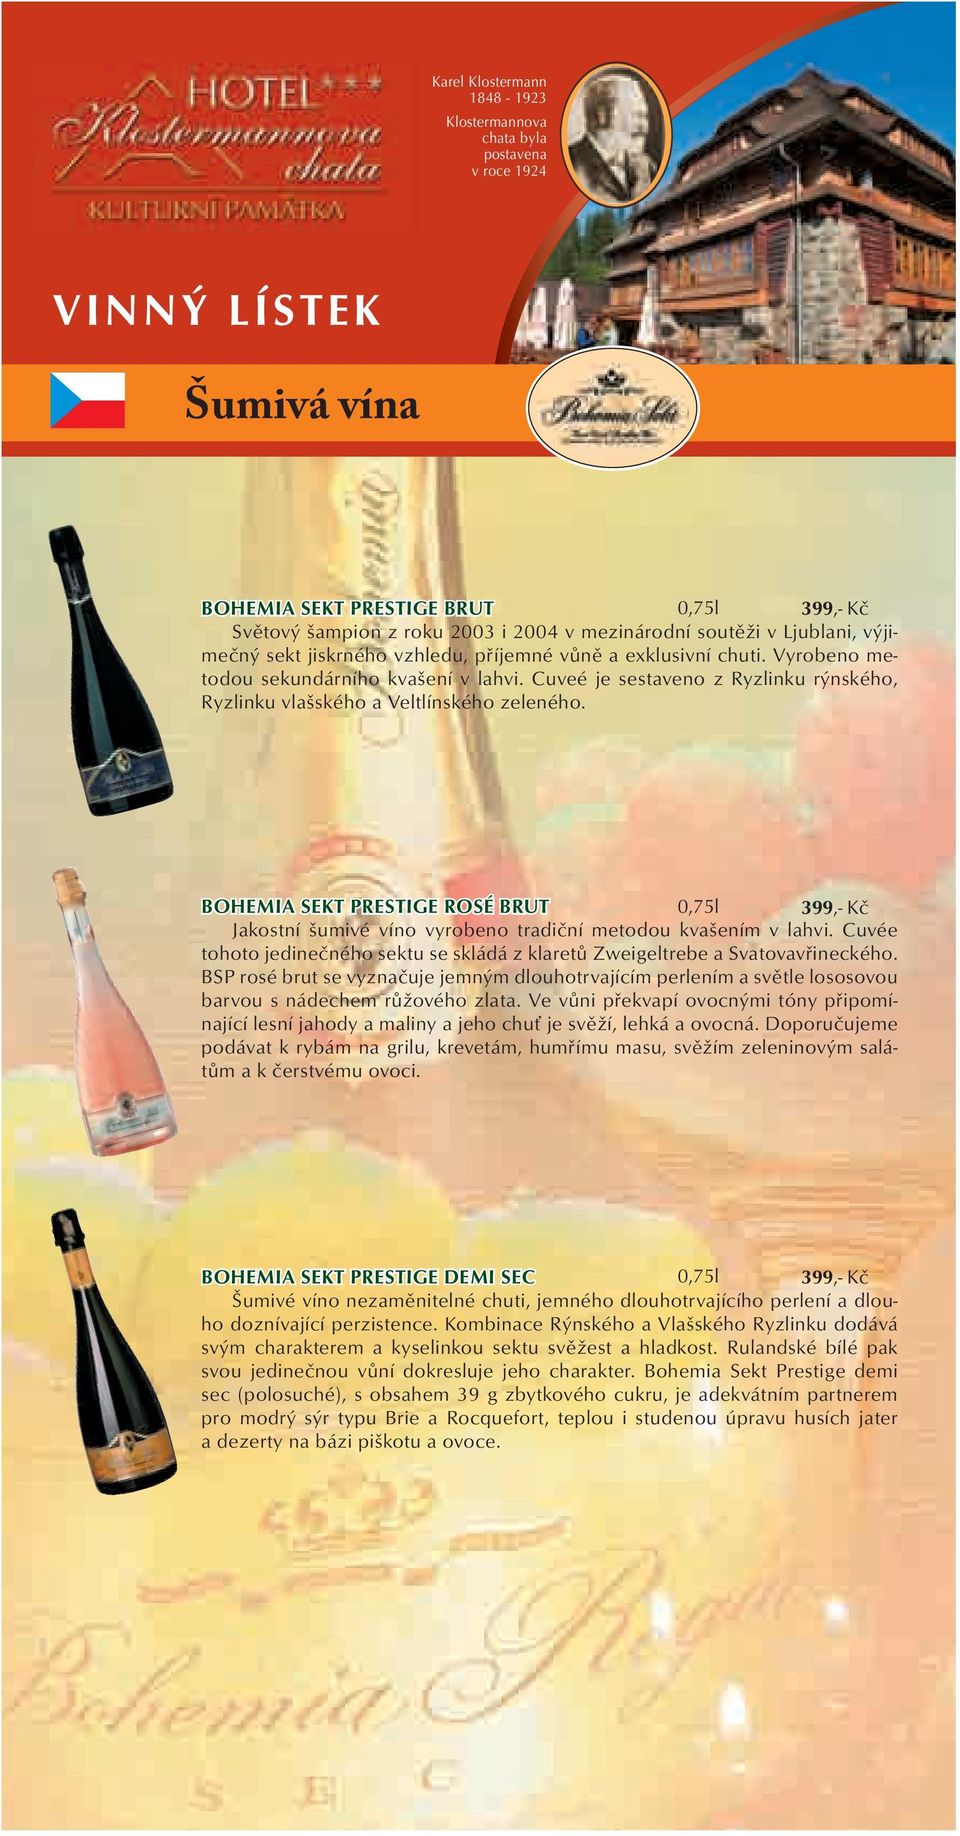 BOHEMIA SEKT PRESTIGE ROSÉ BRUT 0,75l 399,- Kč Jakostní šumivé víno vyrobeno tradiční metodou kvašením v lahvi. Cuvée tohoto jedinečného sektu se skládá z klaretů Zweigeltrebe a Svatovavřineckého.